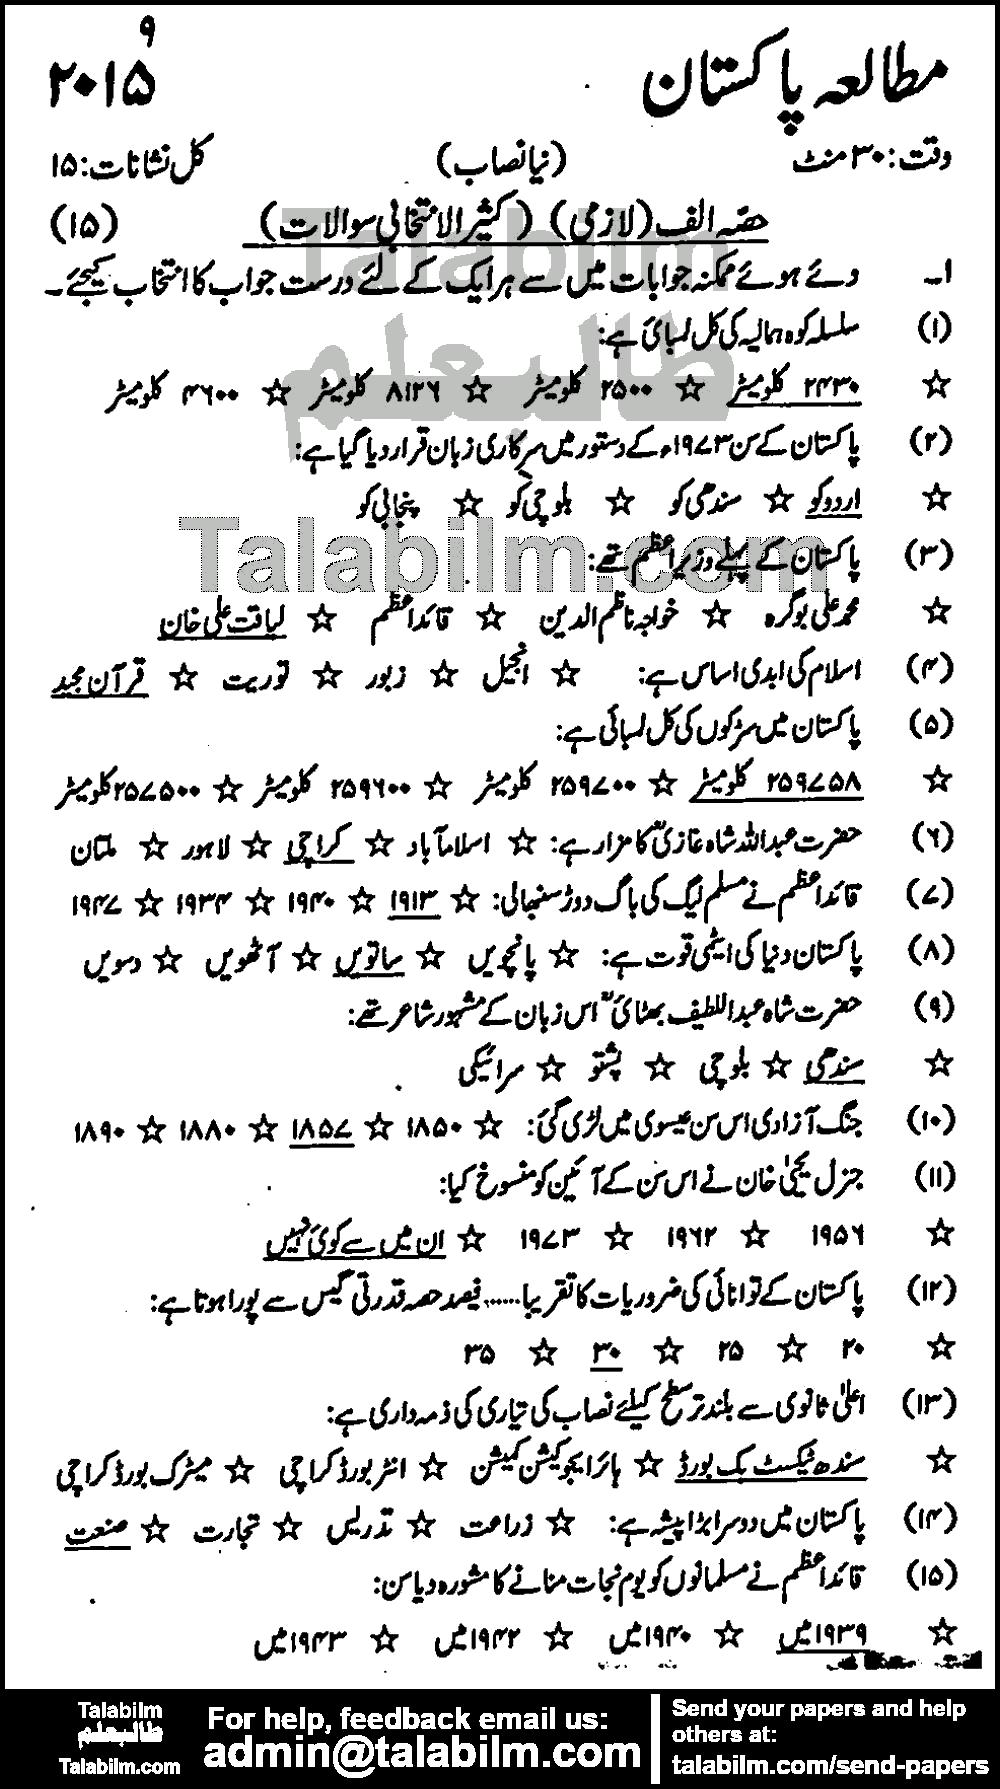 Pak Studies 0 past paper for Urdu Medium 2015 Group-I